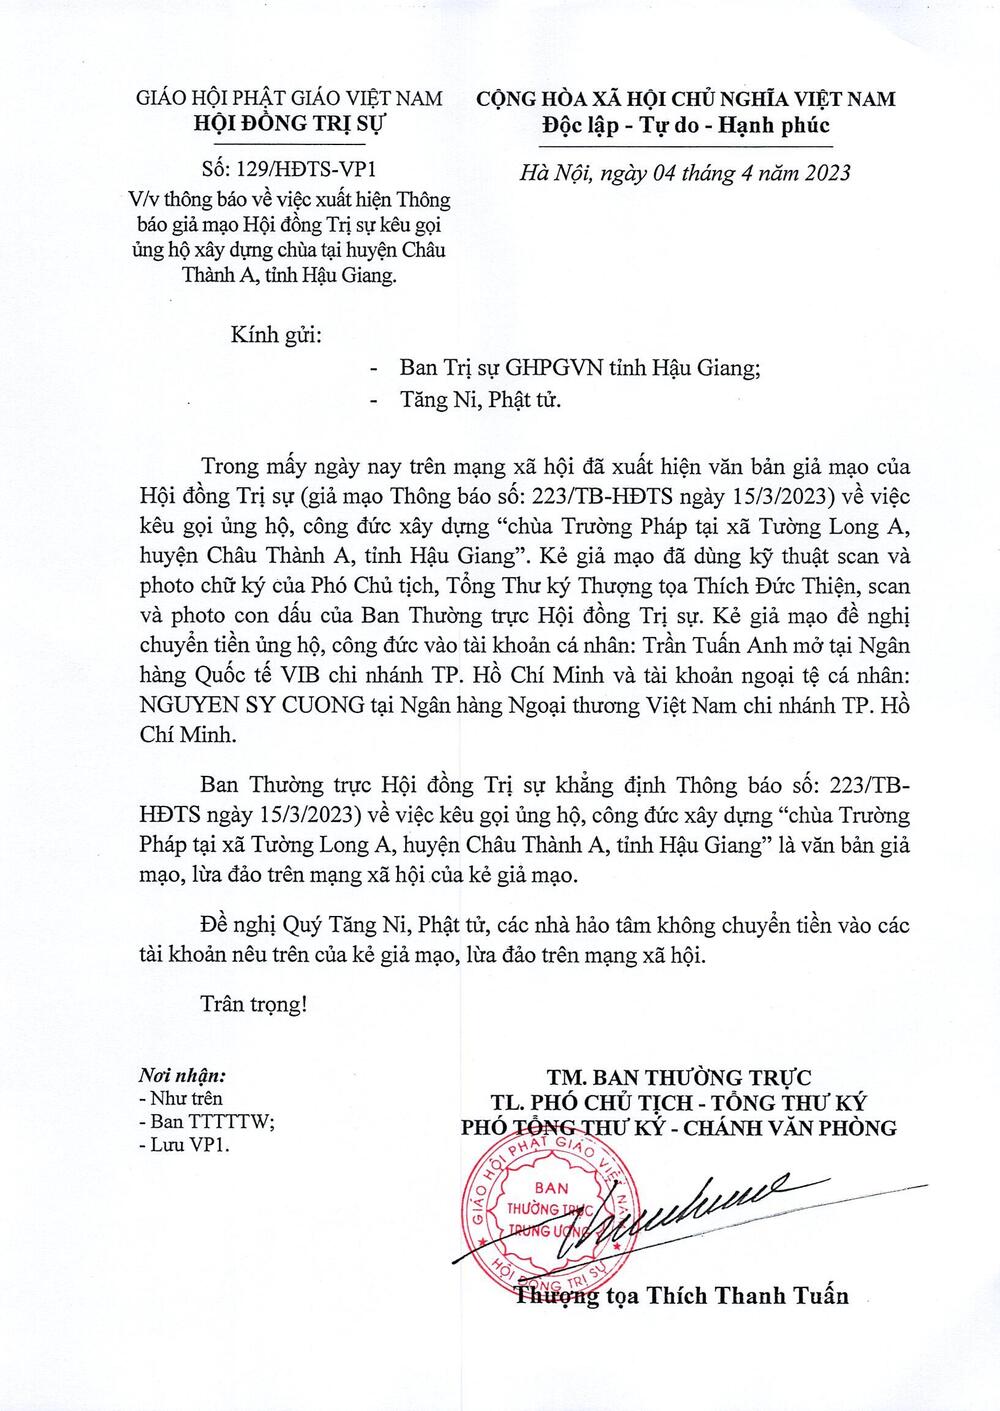 Công Văn: V/v xuất hiện Thông báo giả mạo Hội đồng Trị sự kêu gọi ủng hộ xây dựng chùa tại huyện Châu Thành A, tỉnh Hậu Giang